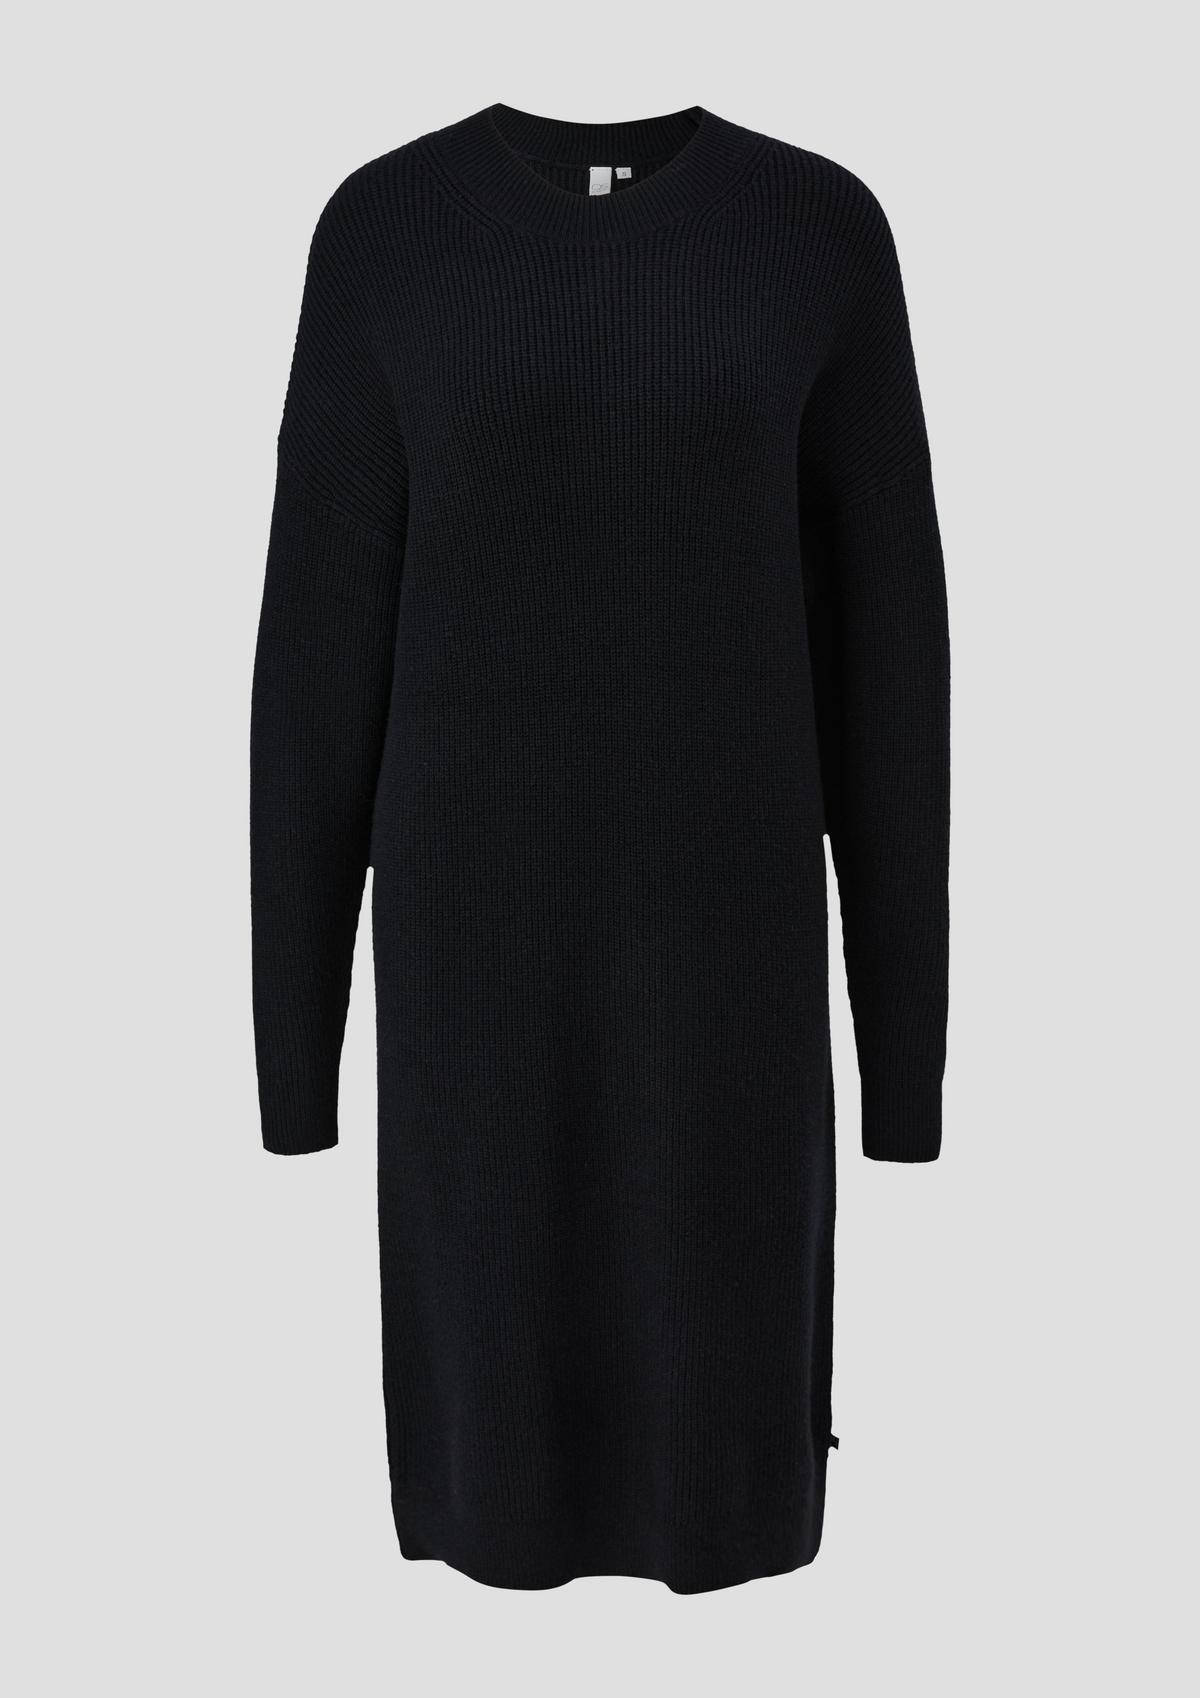 s.Oliver Fine knit jumper dress